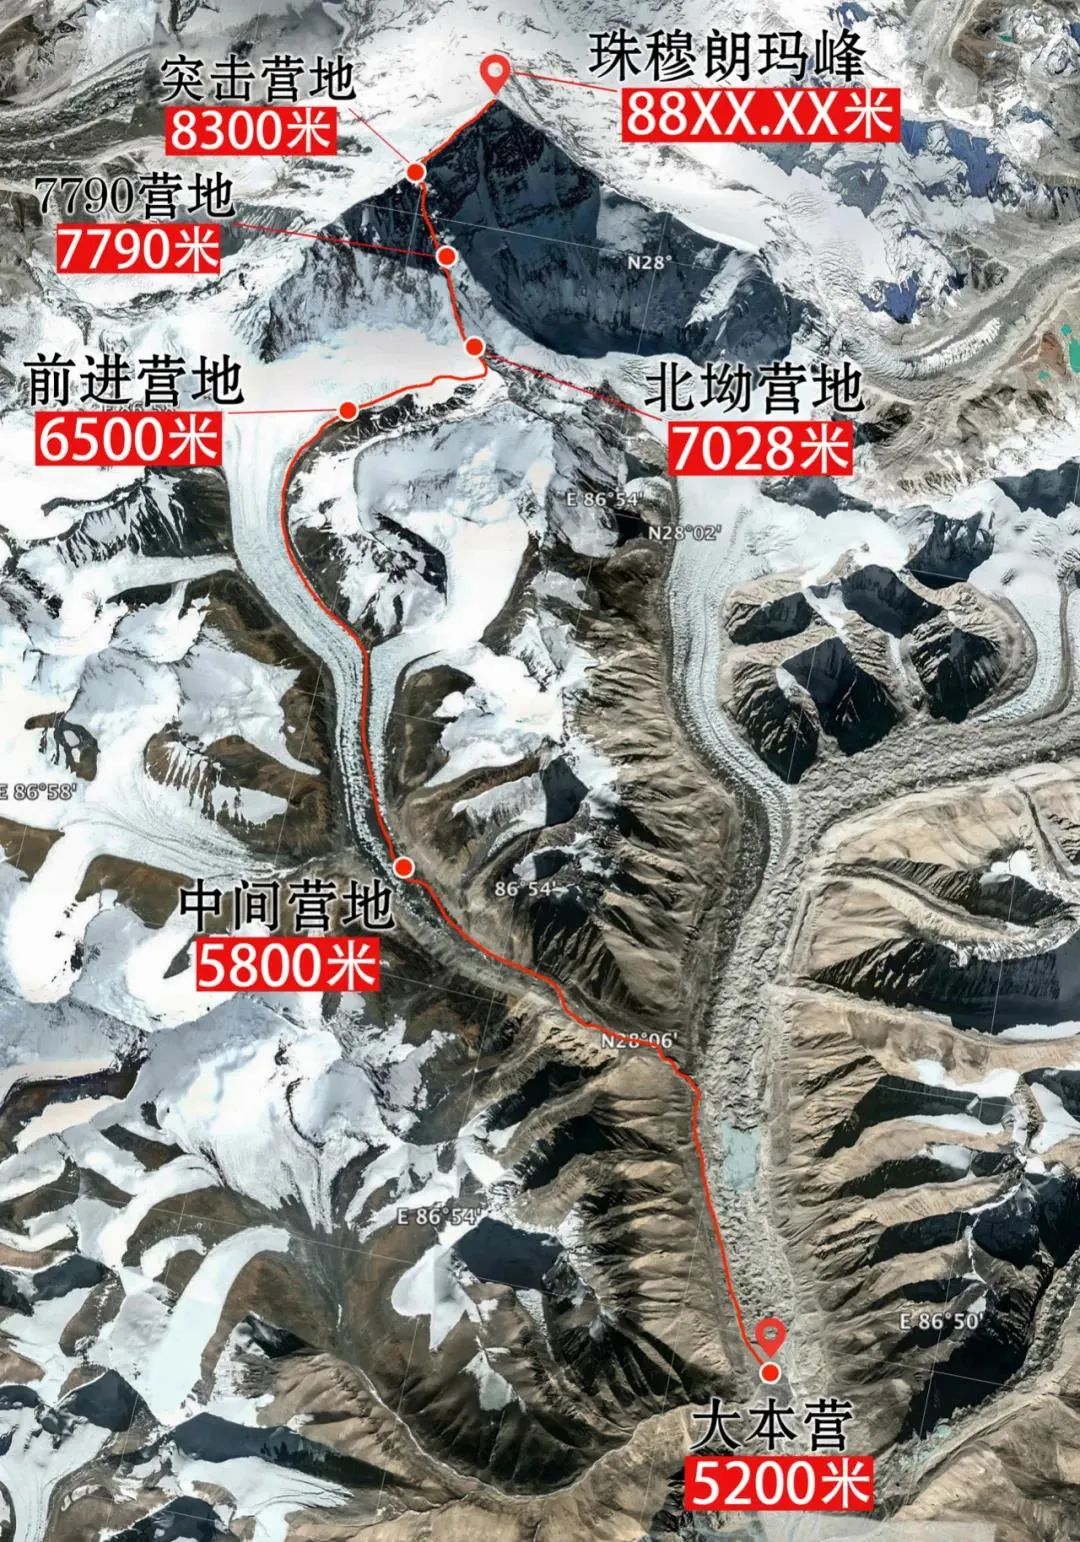 2020珠峰高程测量登山队成功登顶世界第一高峰珠穆朗玛峰 _乐清网_yqcn.com